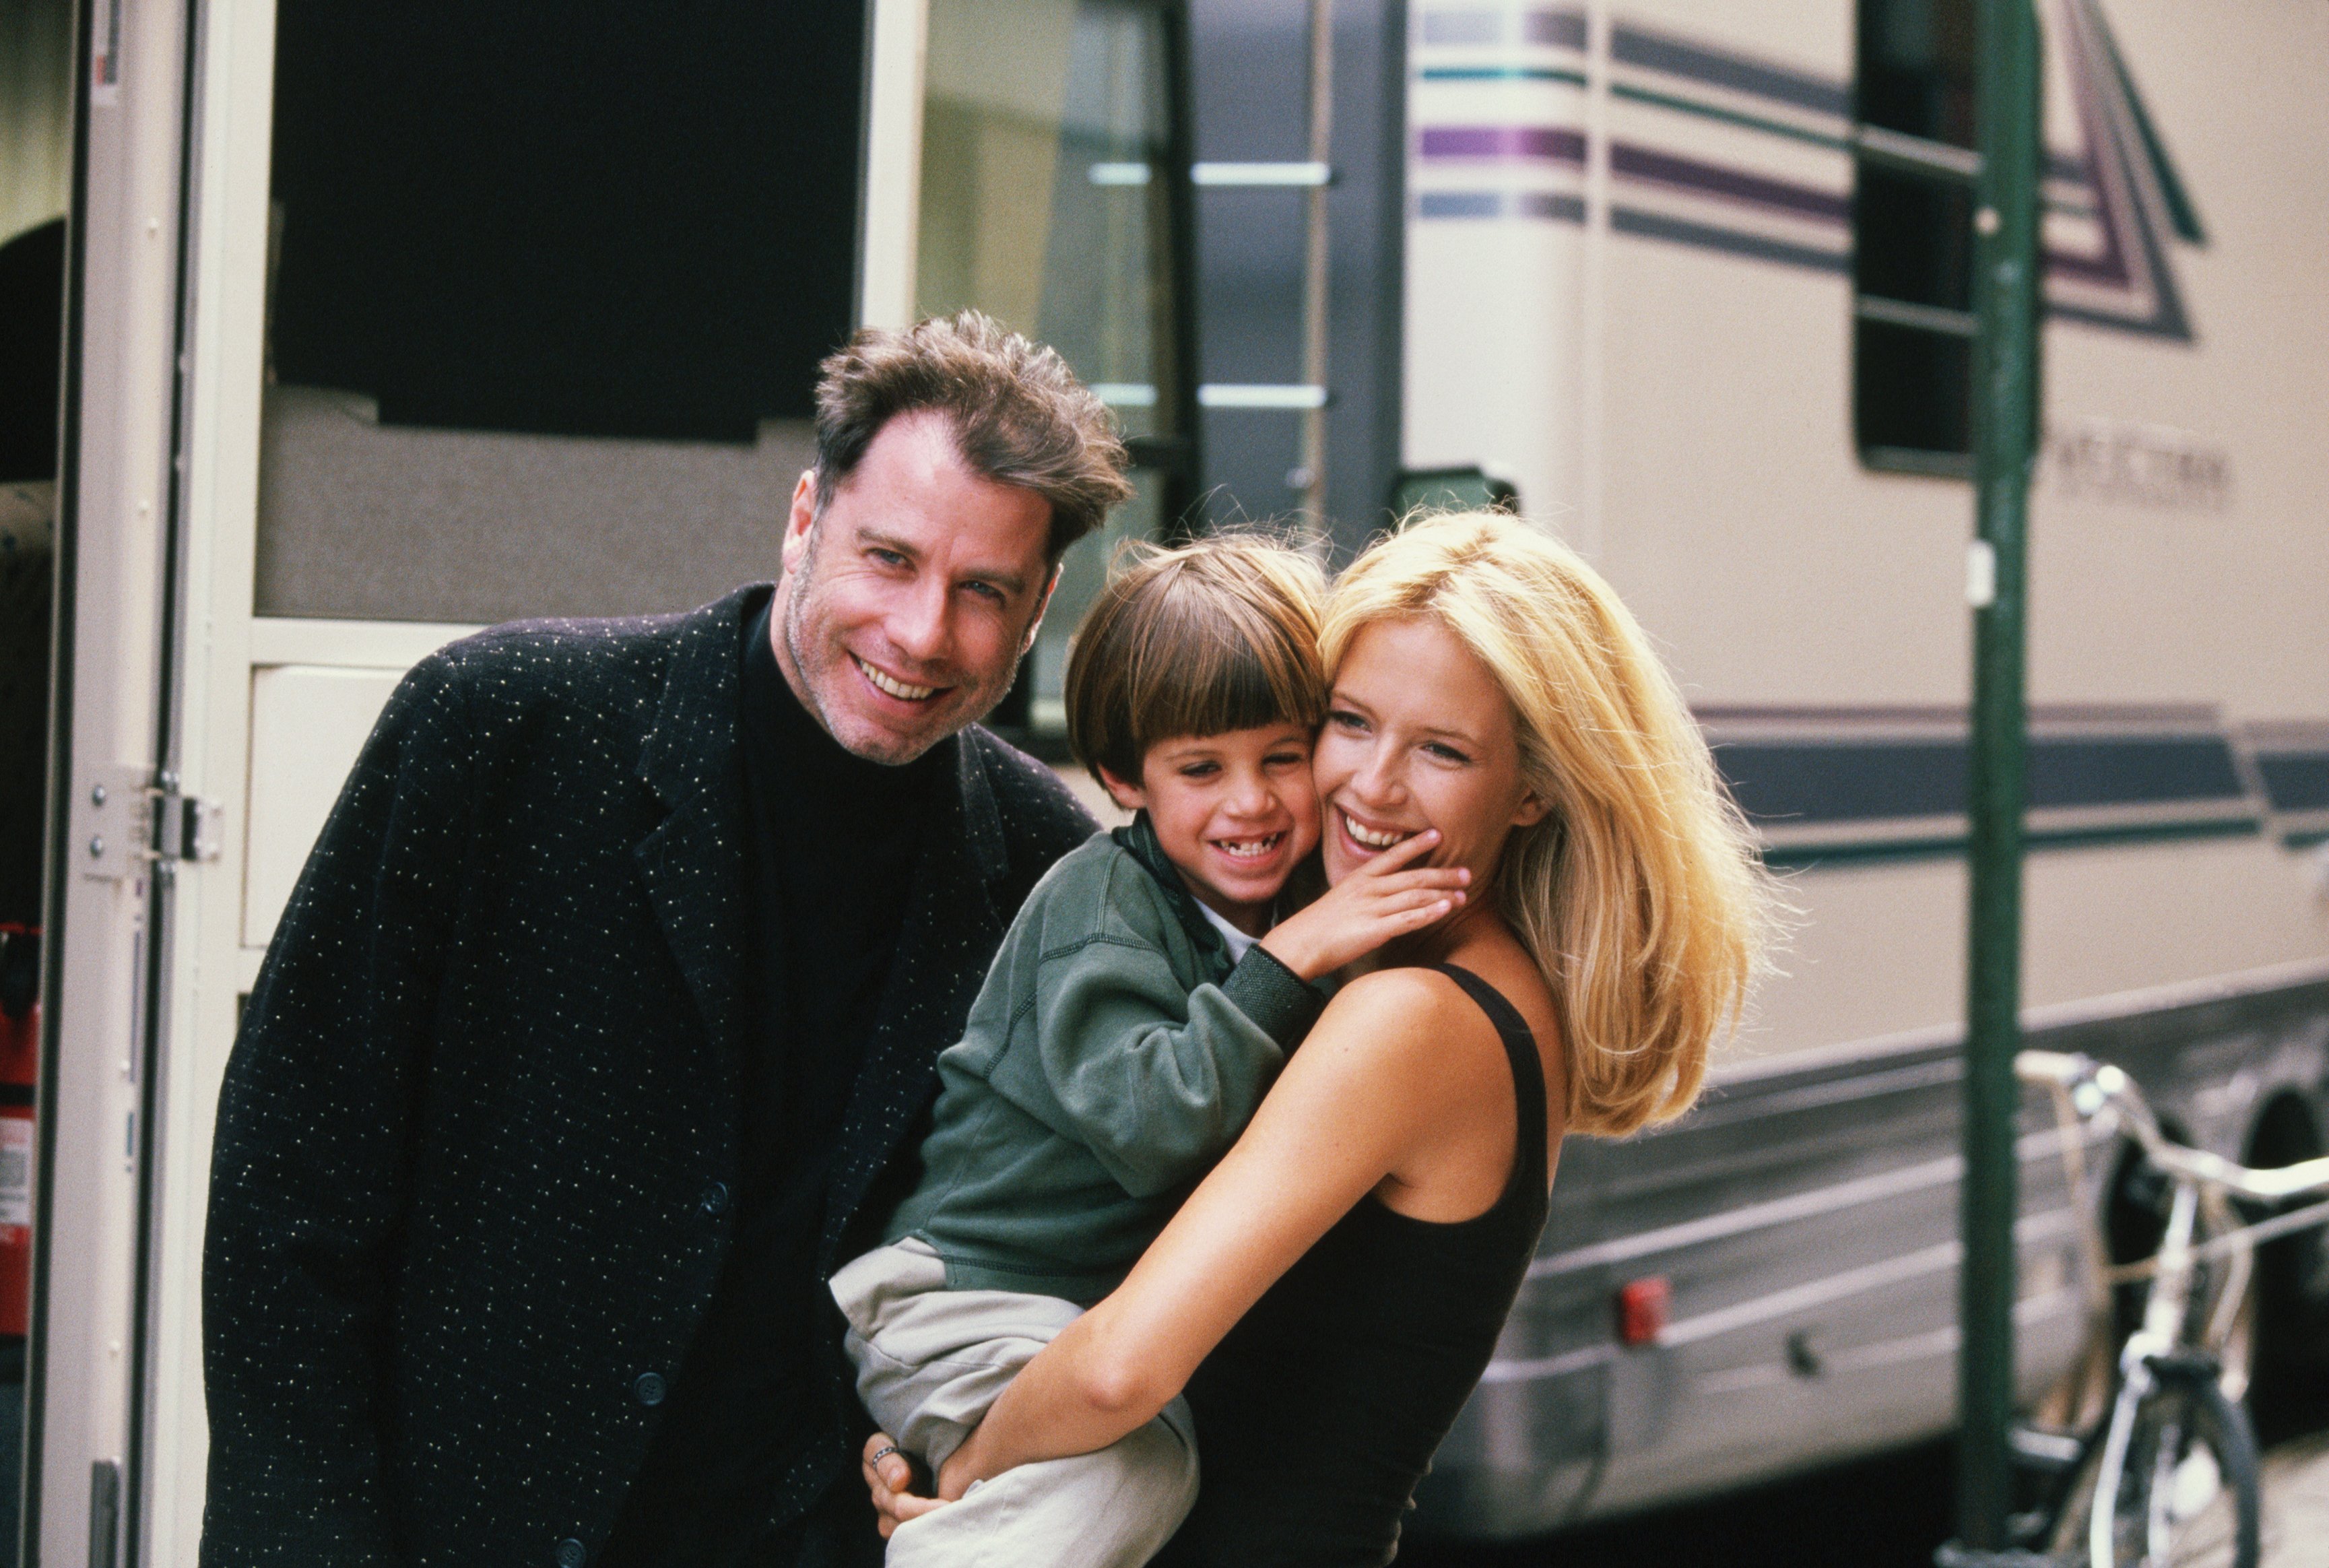 L'actrice Kelly Preston reçoit la visite de son mari John Travolta (à gauche) et de son fils Jett lors du tournage du film "Addicted to Love" en 1997. | Source : Getty Images